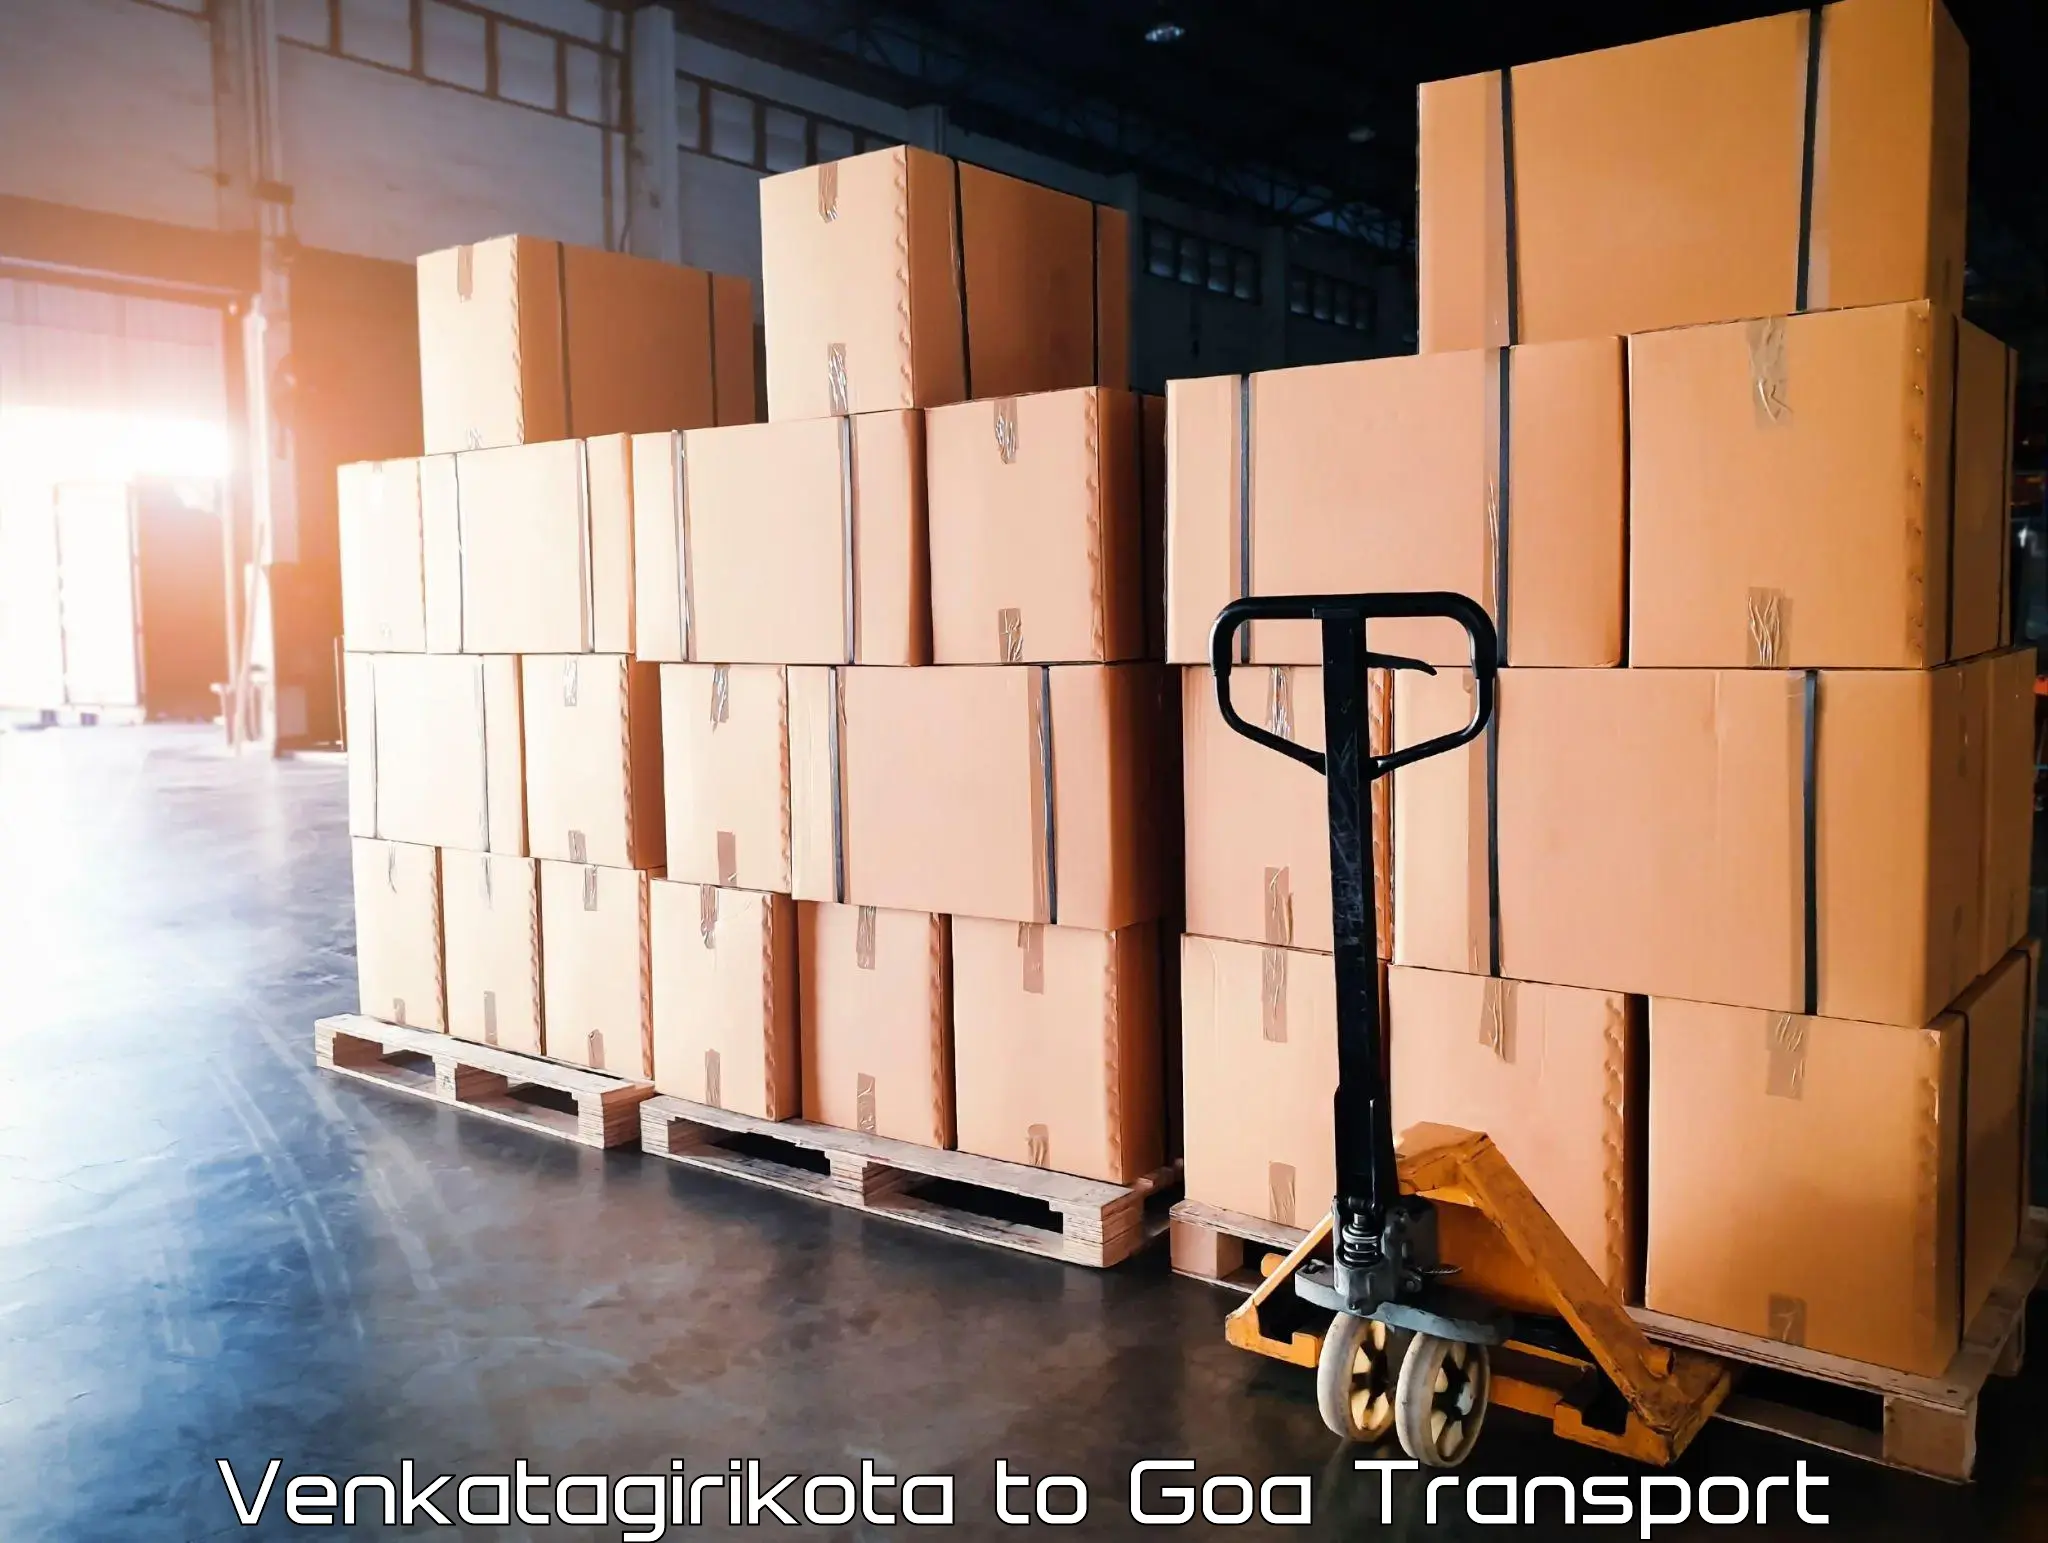 Container transport service Venkatagirikota to Goa